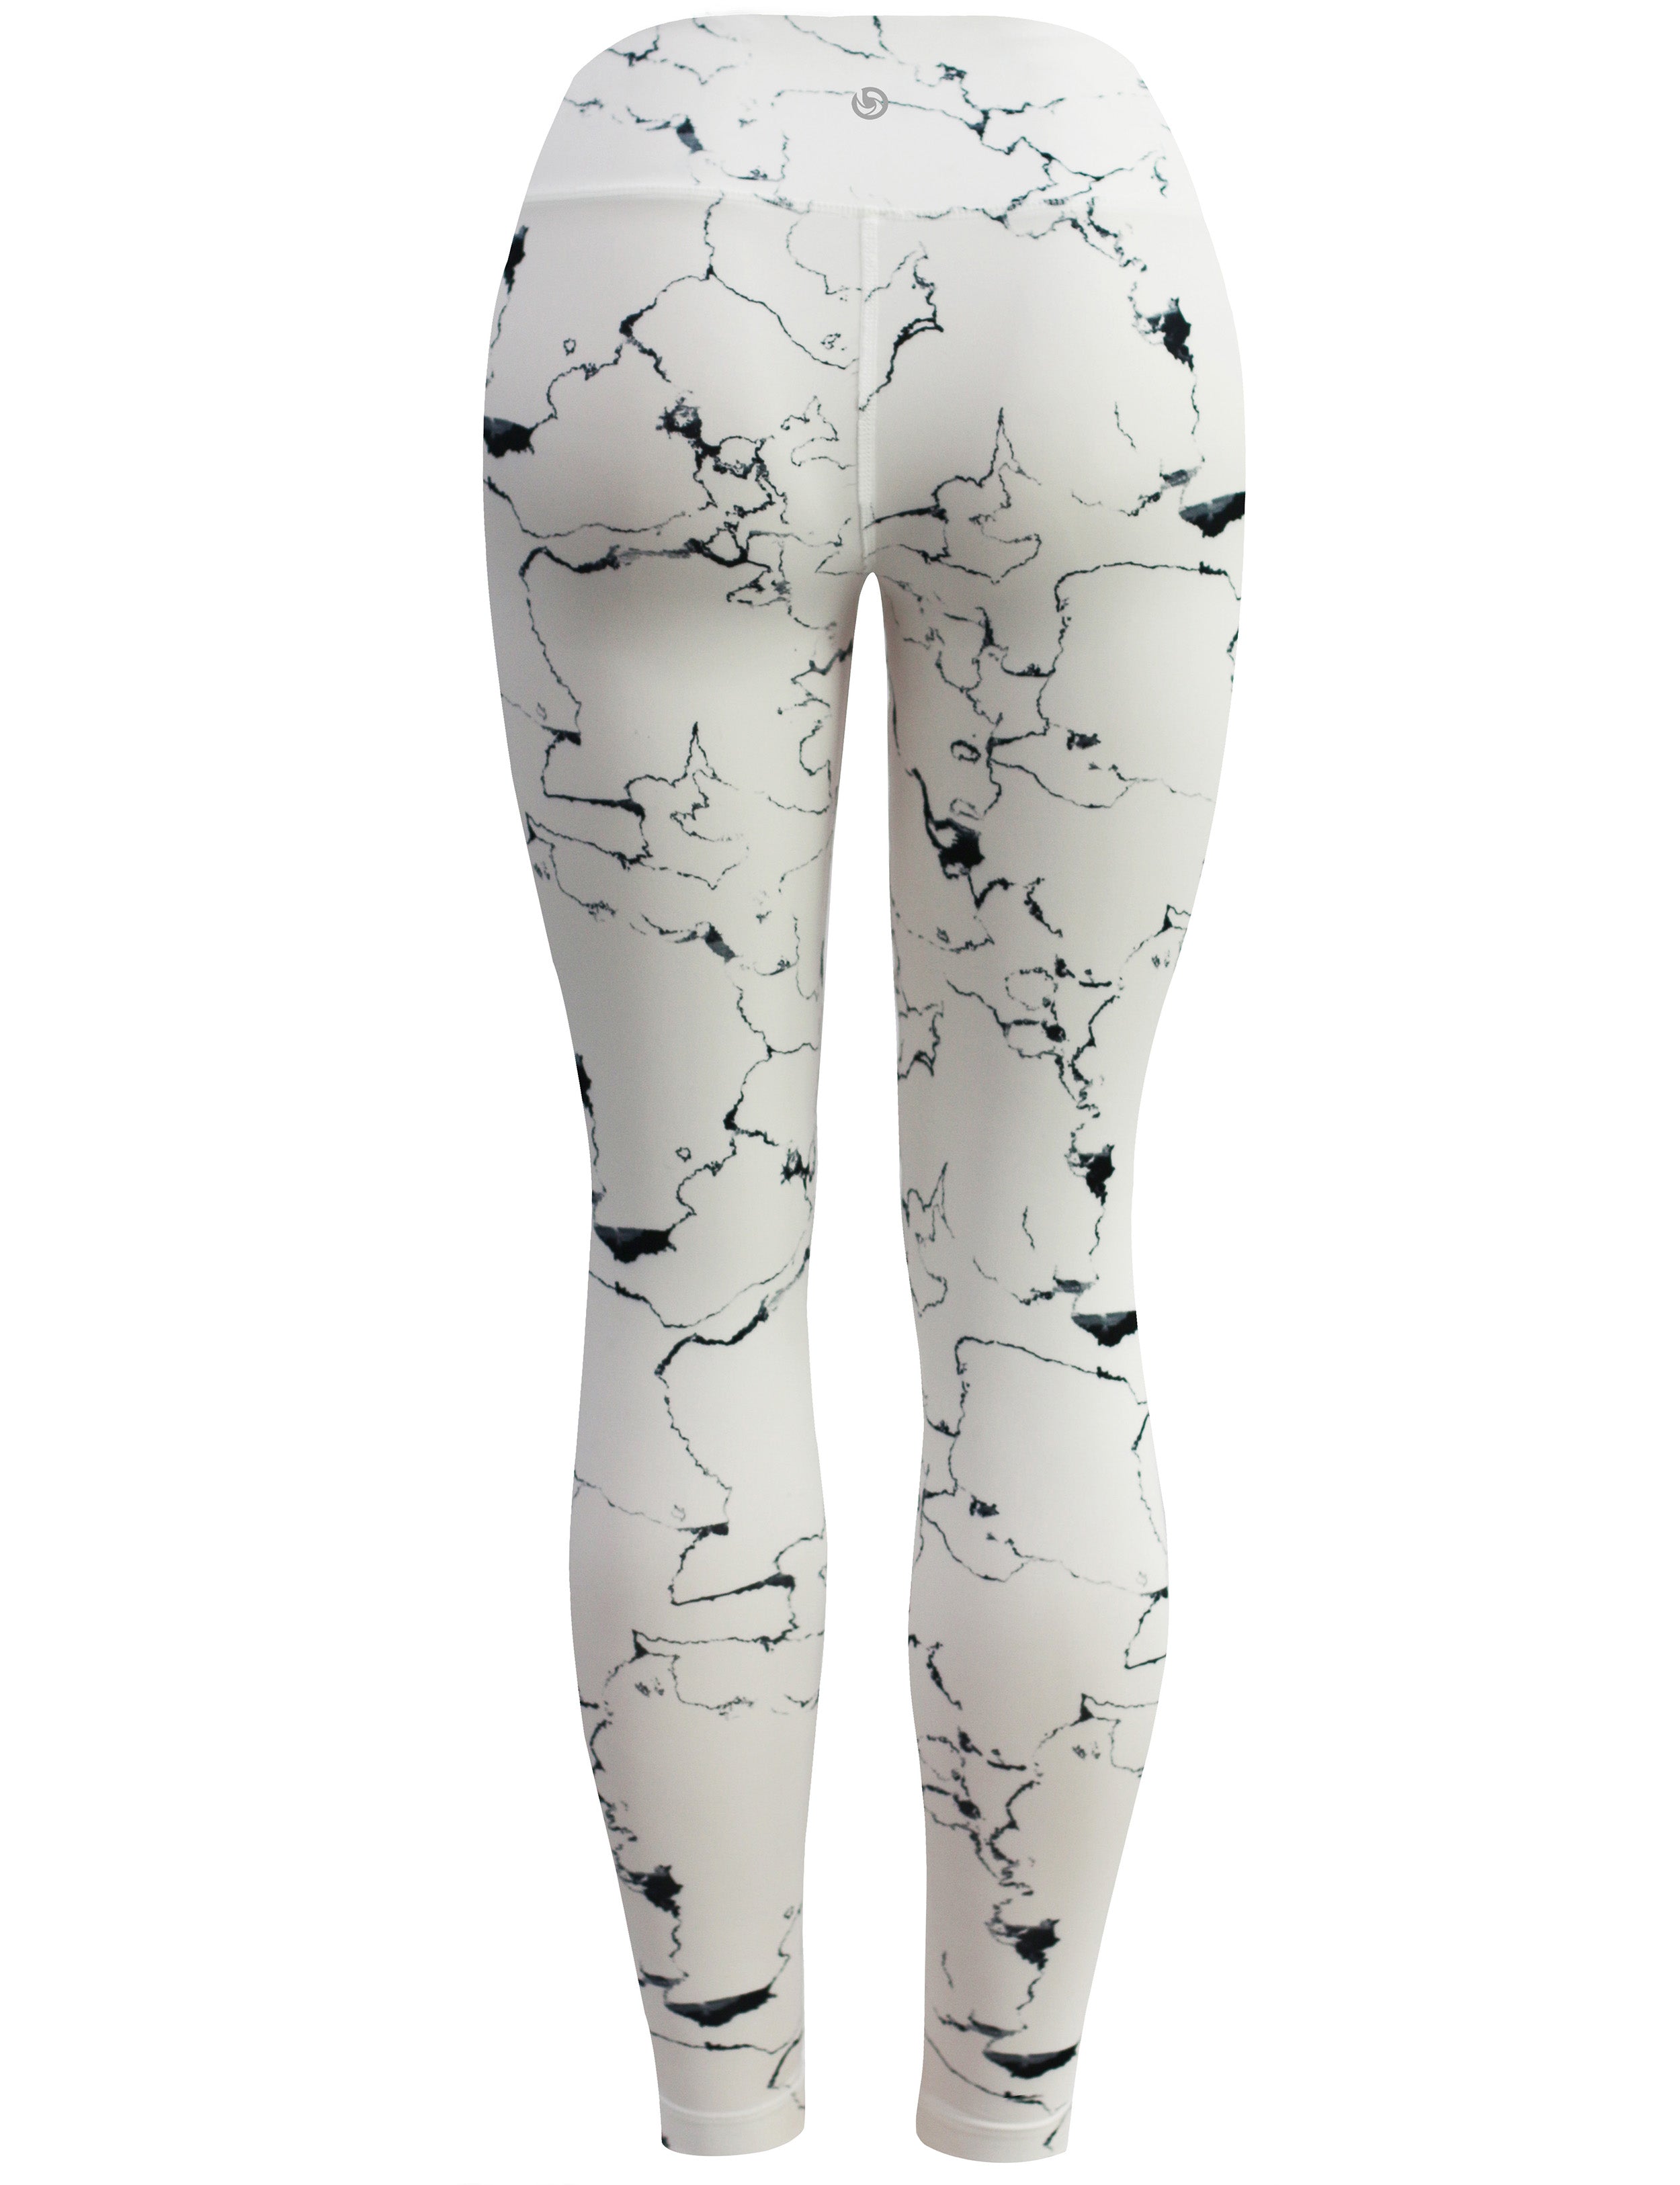 26" Printed Yoga Pants WHITETHUNDER